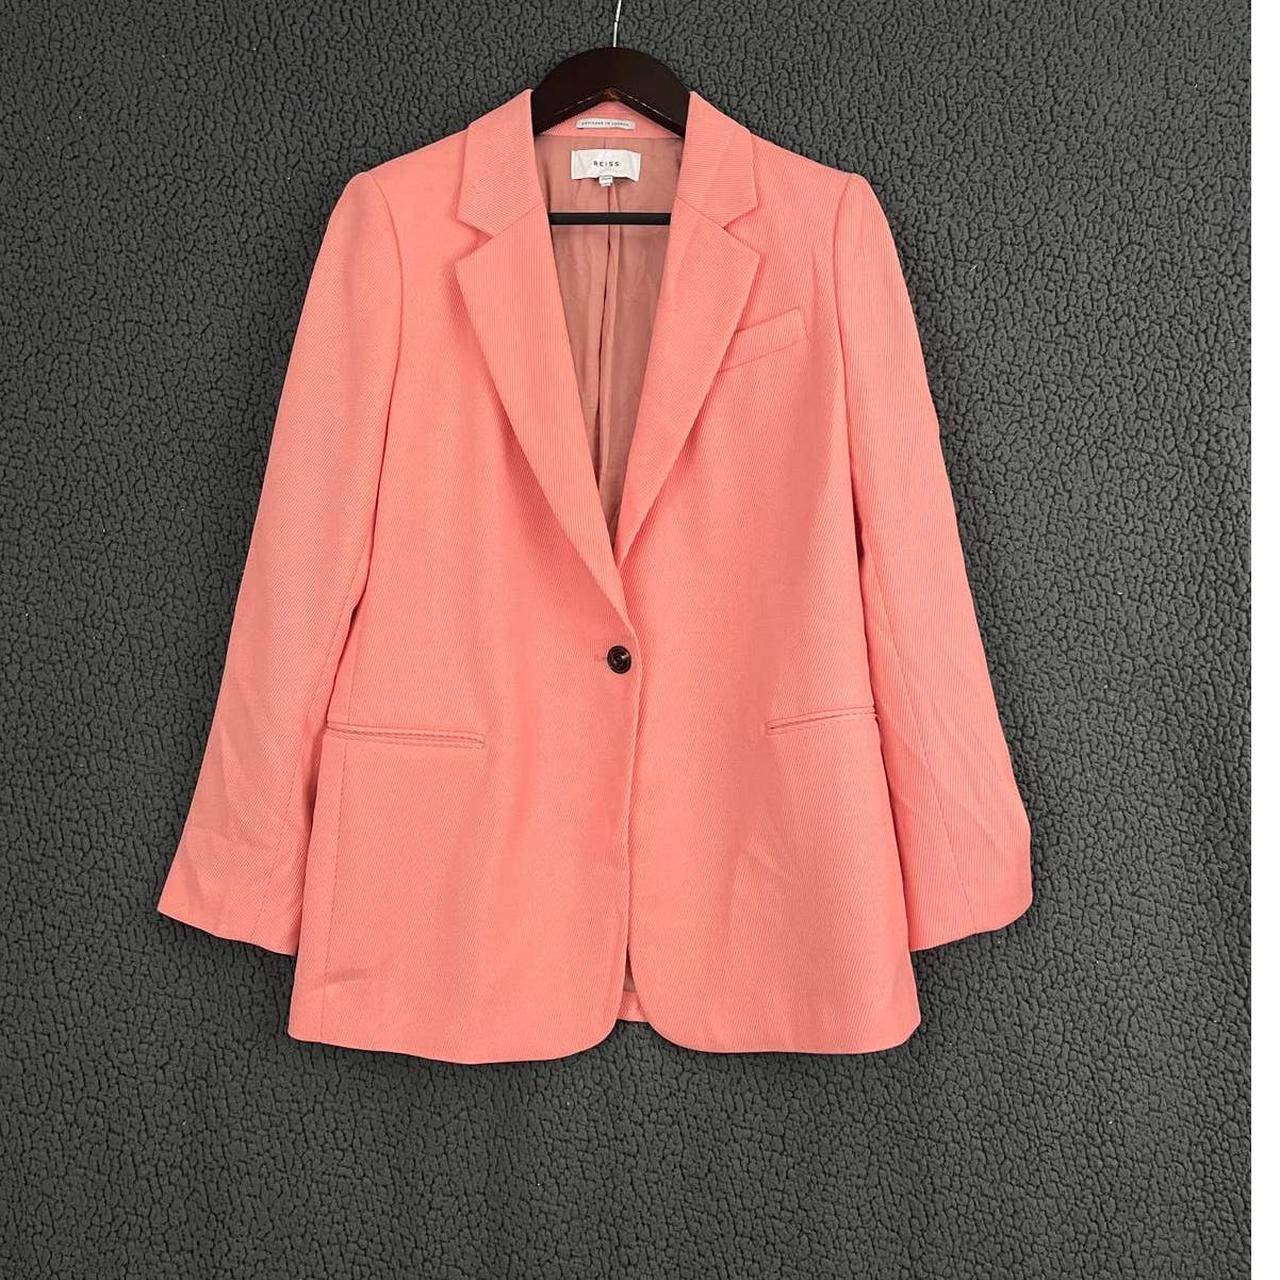 Reiss Women's Pink Jacket